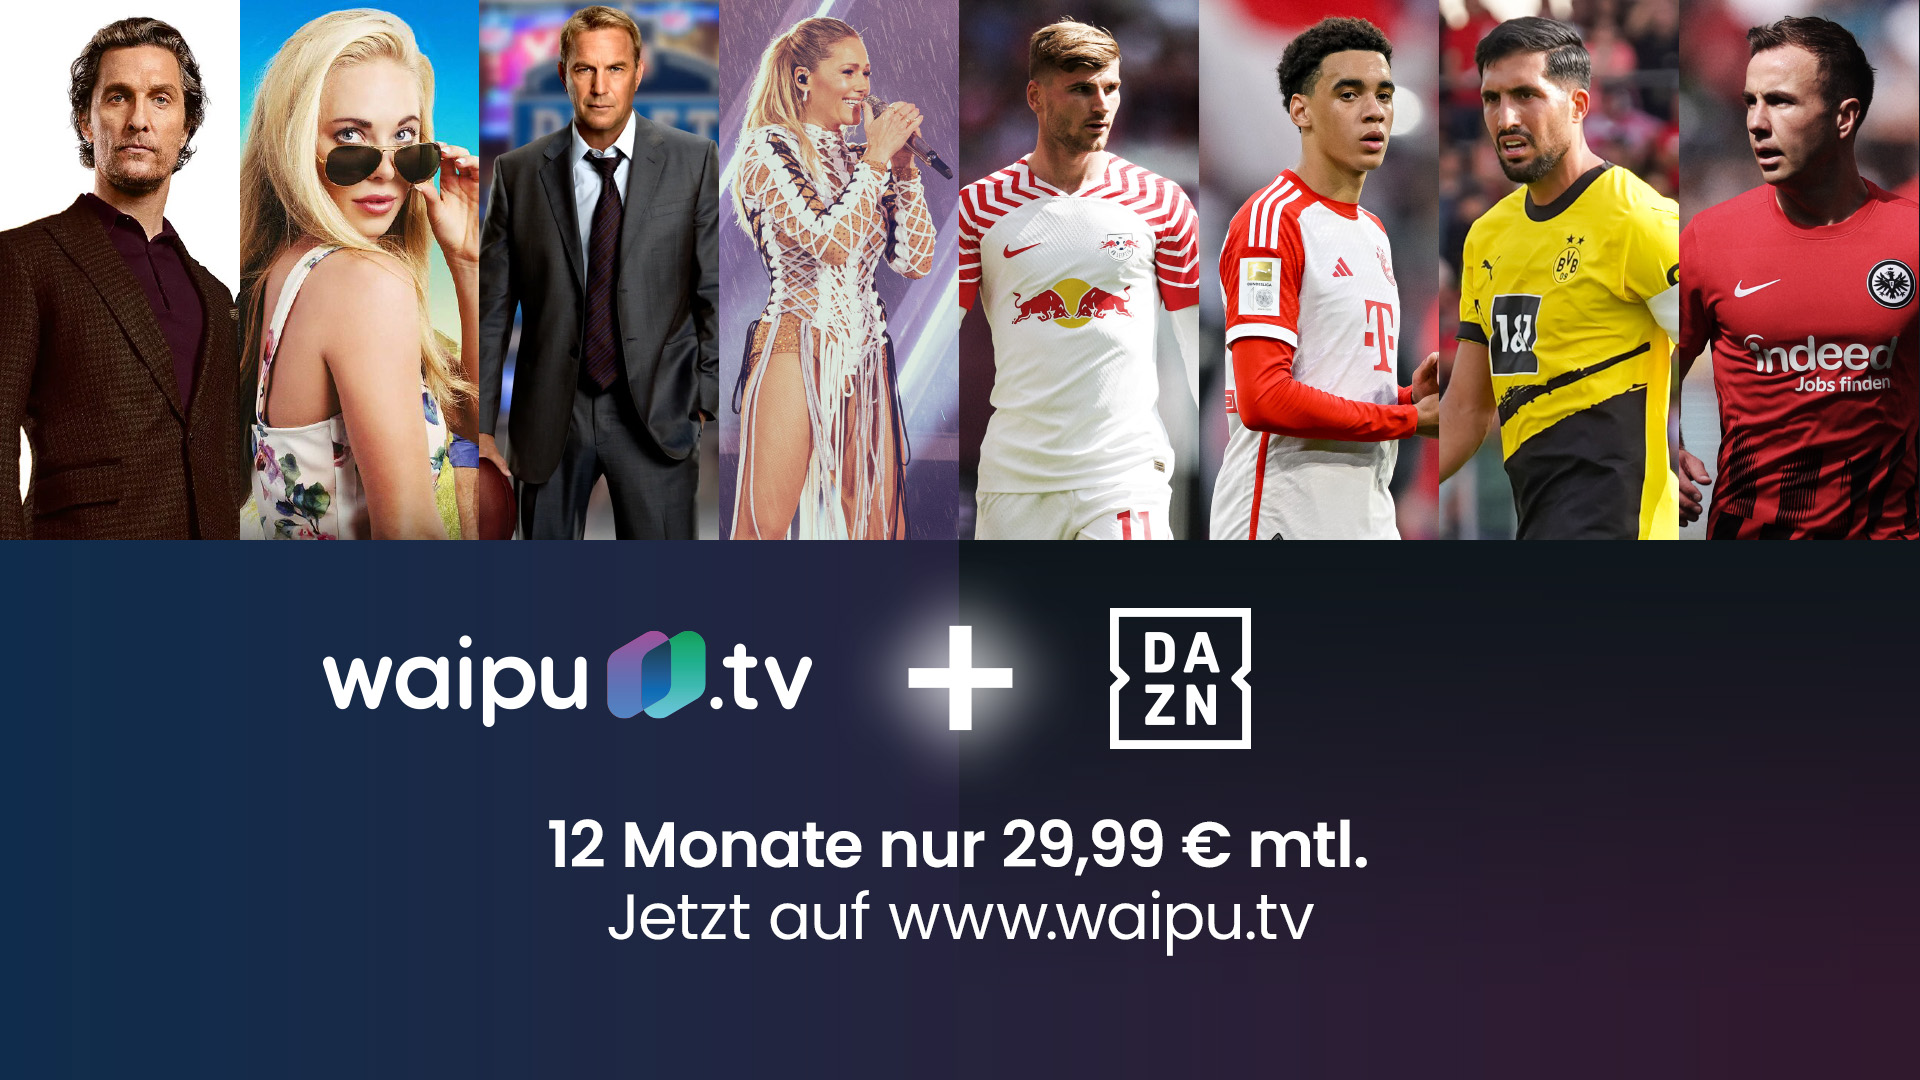 Prozent launcht 25 DAZN UNLIMITED-Angebot mit neues Rabatt waipu.tv